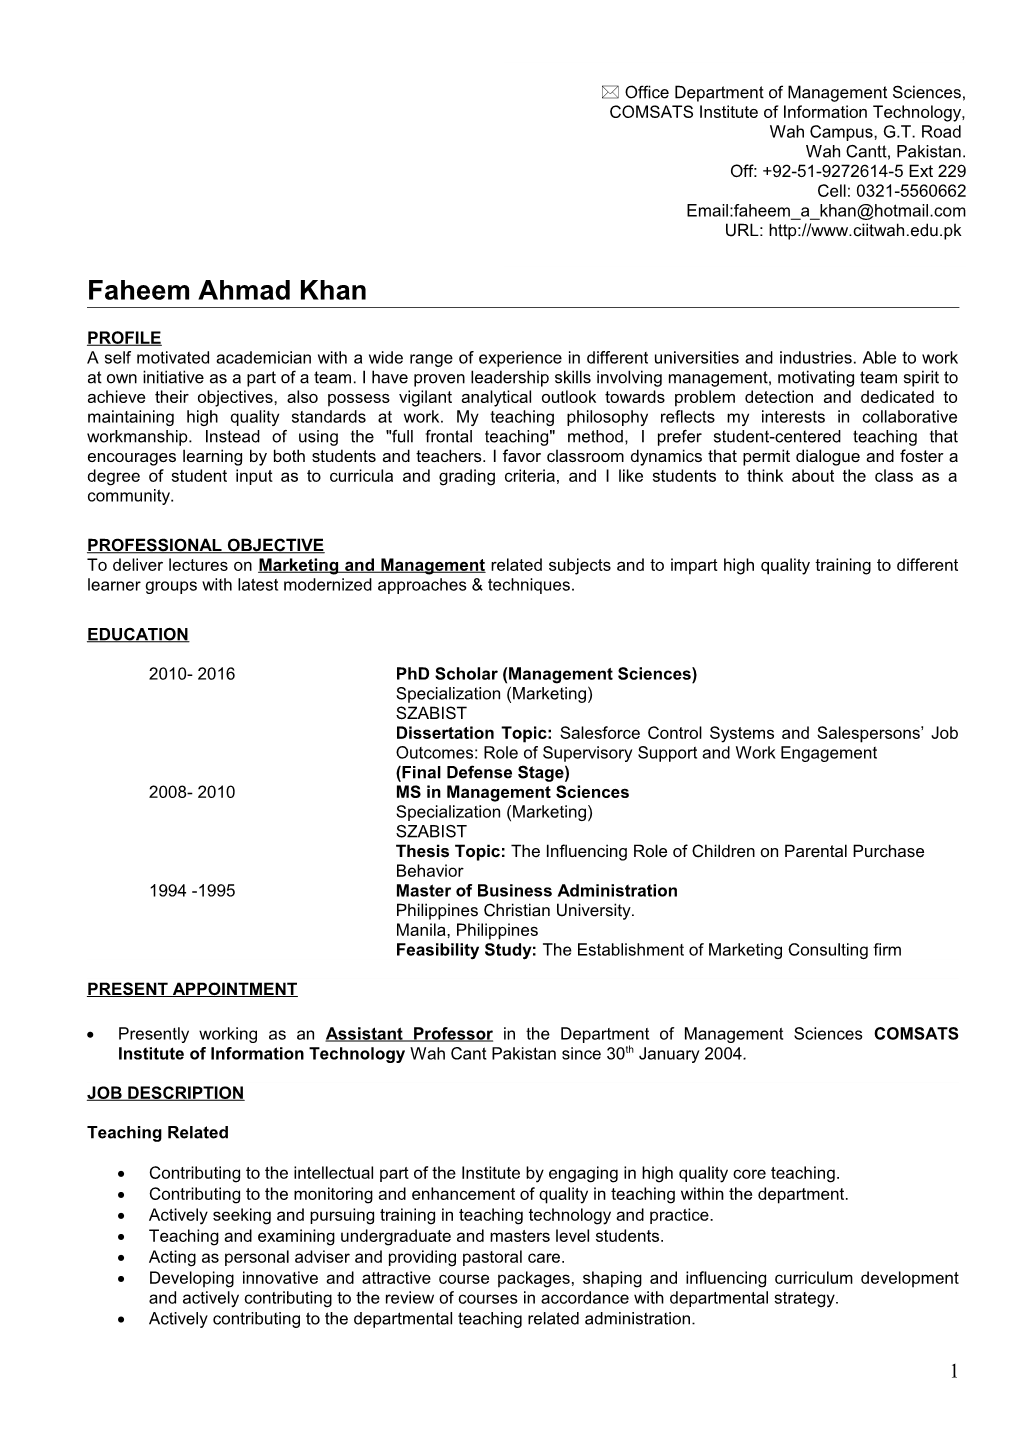 Faheem Ahmad Khan